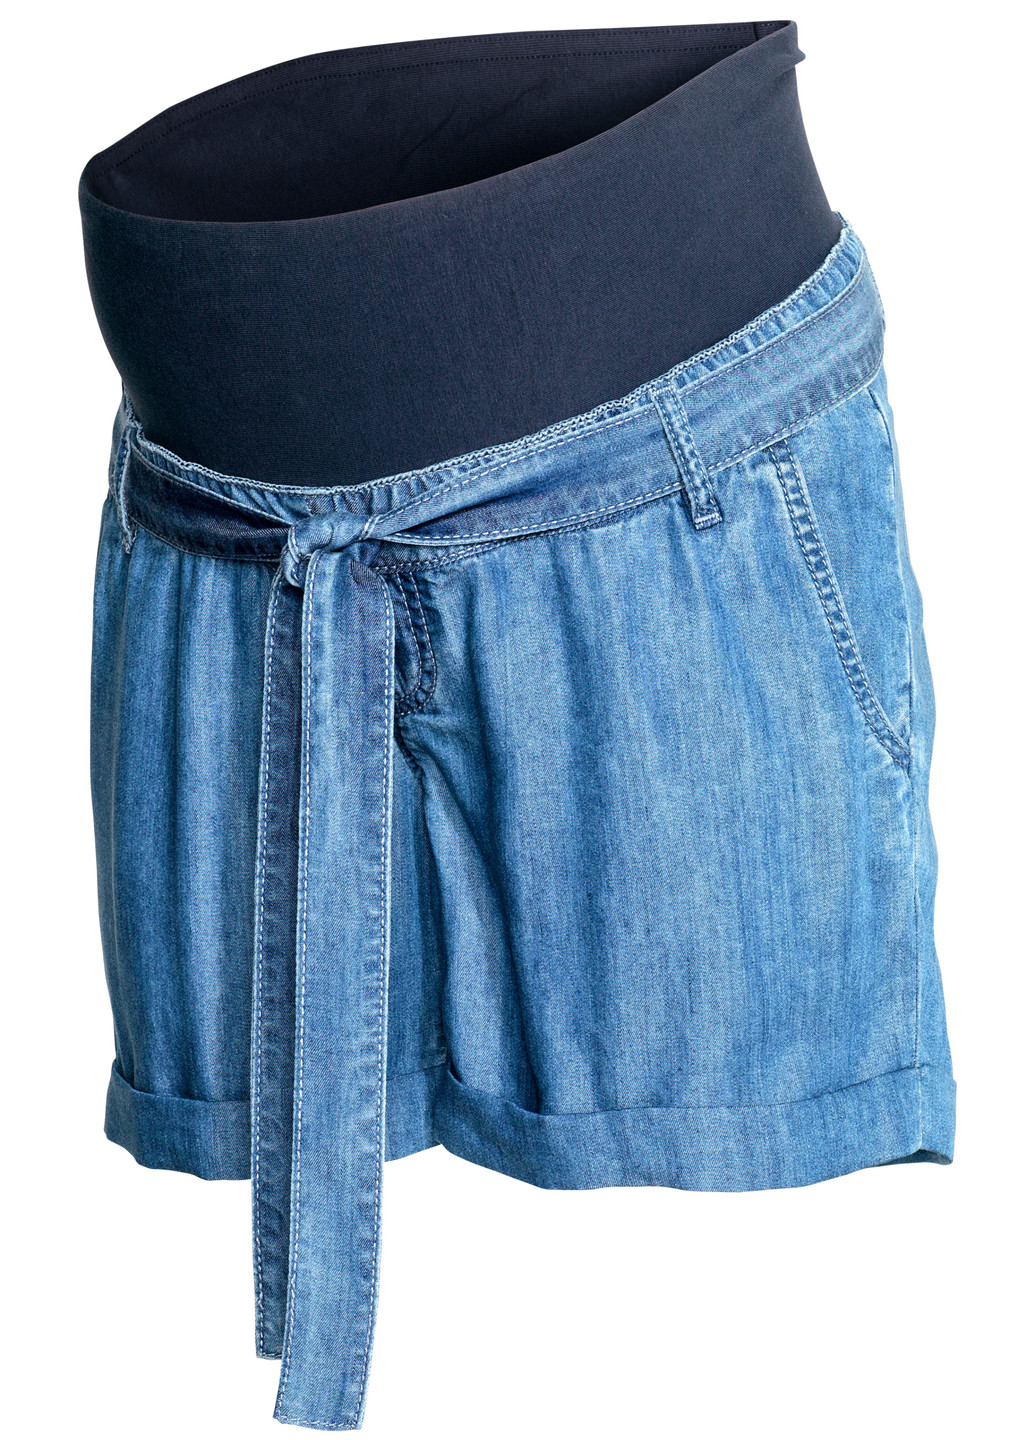 Шорты для беременных H&M однотонные синие джинсовые